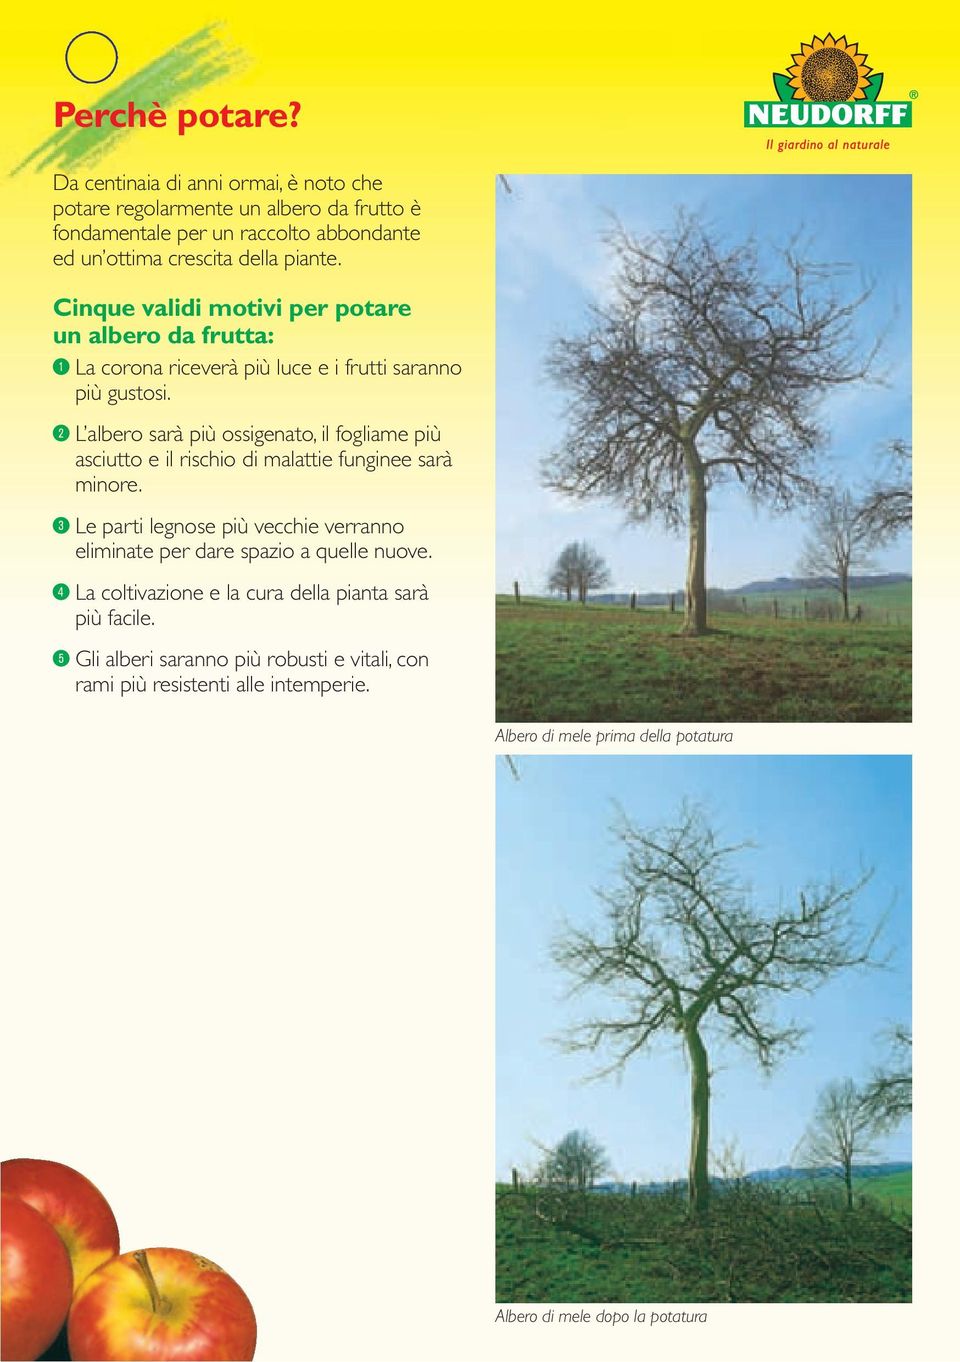 ; L albero sarà più ossigenato, il fogliame più asciutto e il rischio di malattie funginee sarà minore.